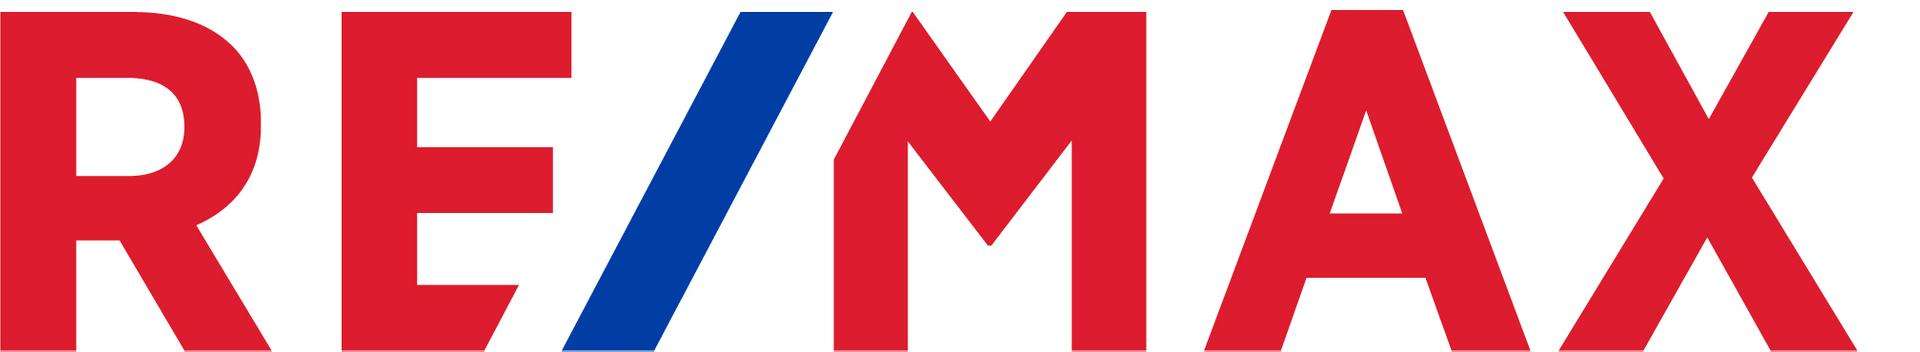 Makler RE/MAX Traunsee logo